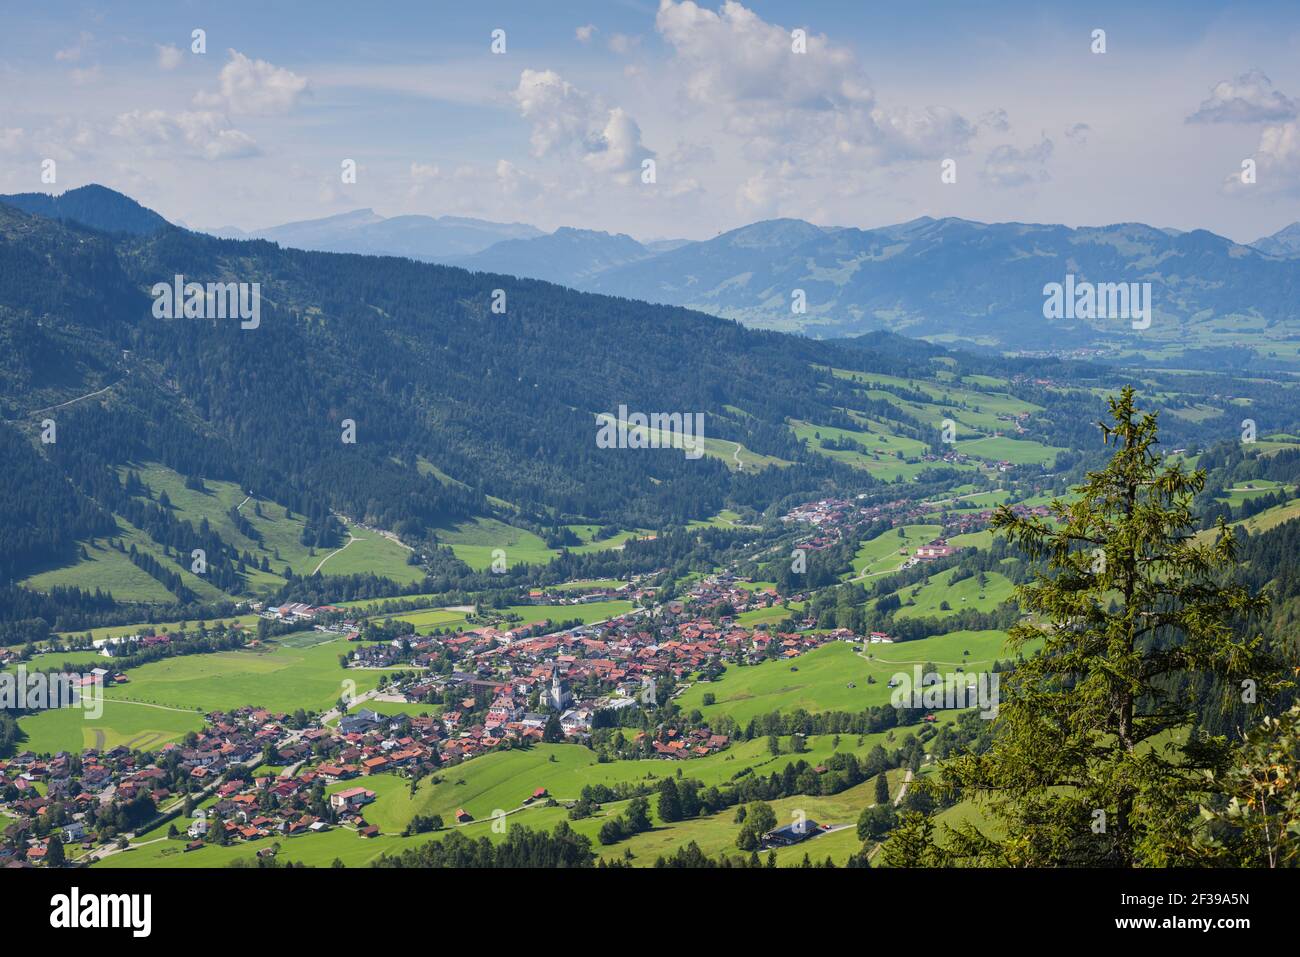 Geografía / viaje, Alemania, Baviera, panorama desde el Hirschberg, 1456m, en el valle de Ostrach con Bad Hindelang e Imberg (guisante, Libertad de Panorama Foto de stock